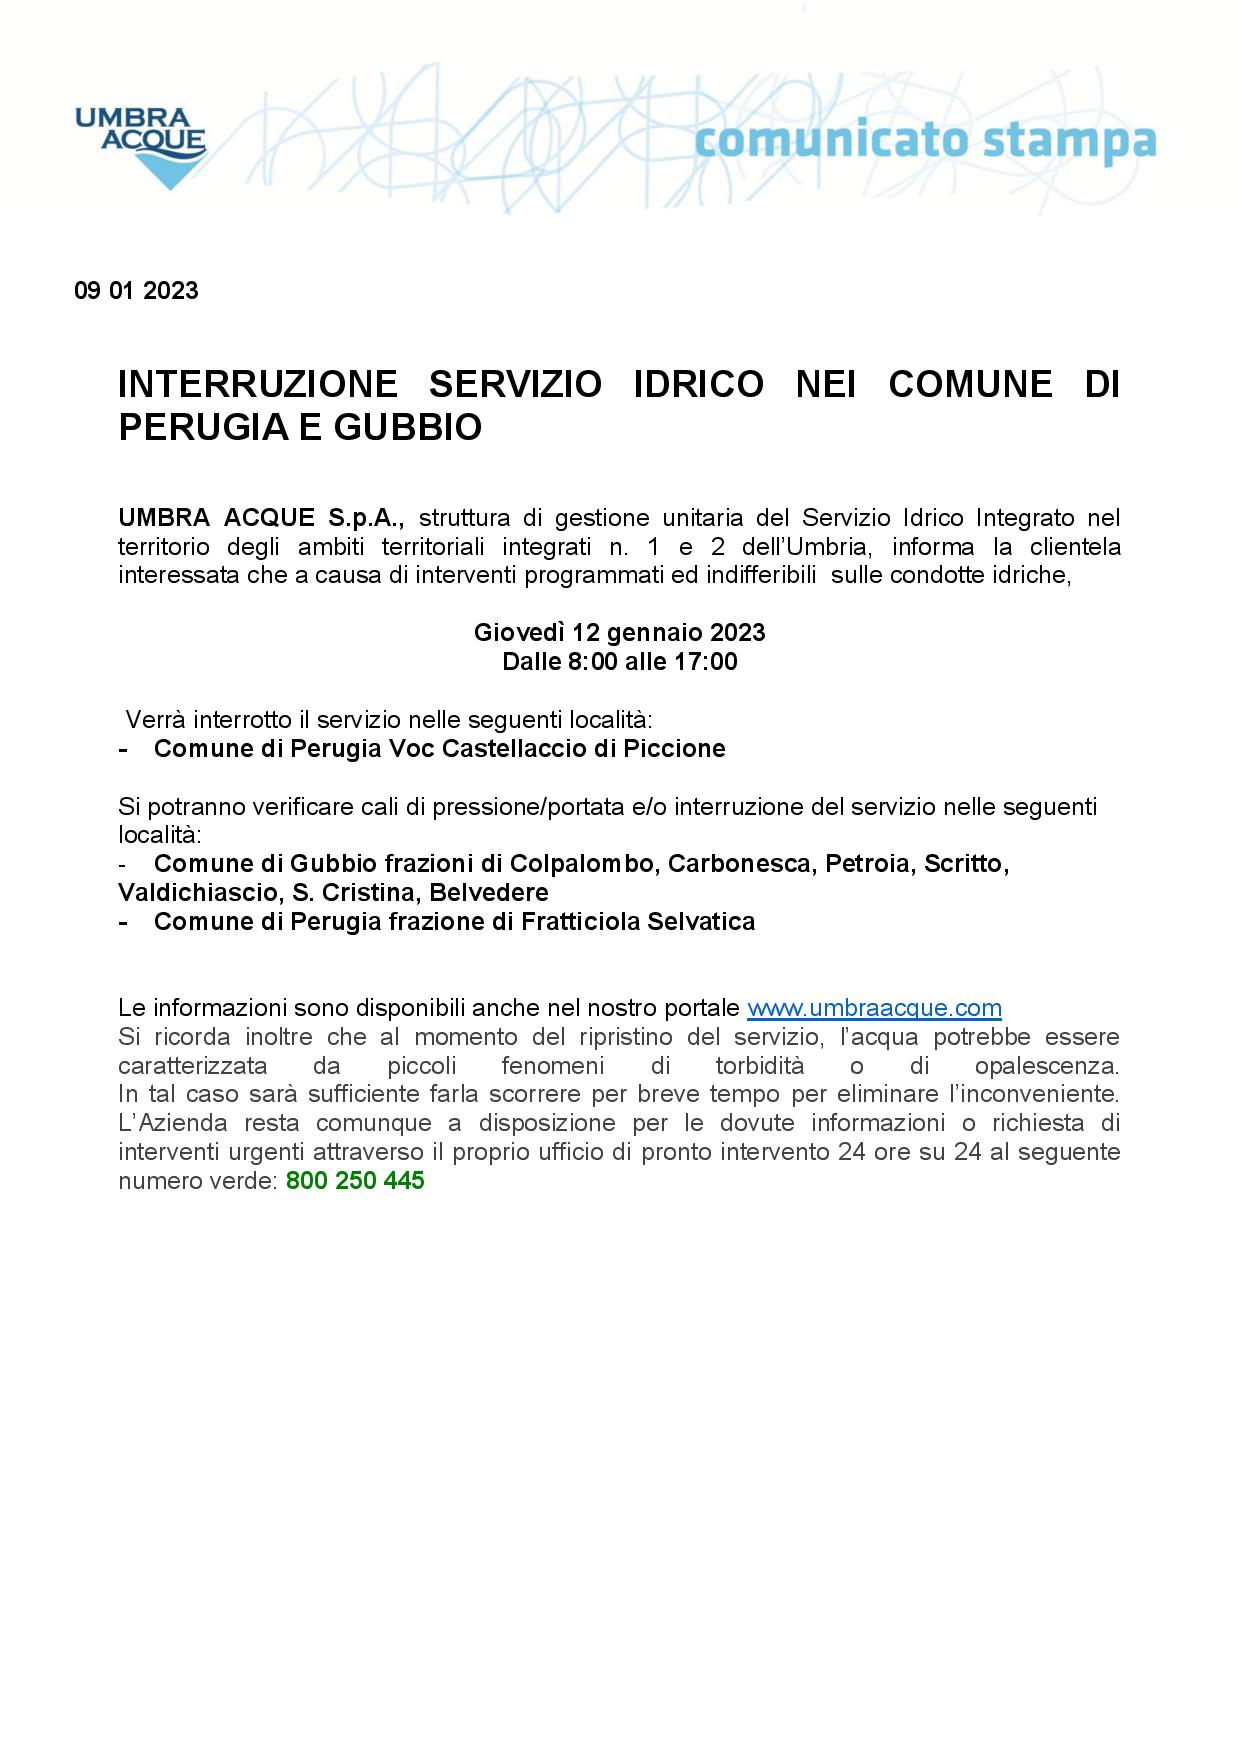 INTERRUZIONE-SERVIZIO-IDRICO-COMUNE-DI-GUBBIO-E-PERUGIA-12-GENNAIO-1-page-001 761